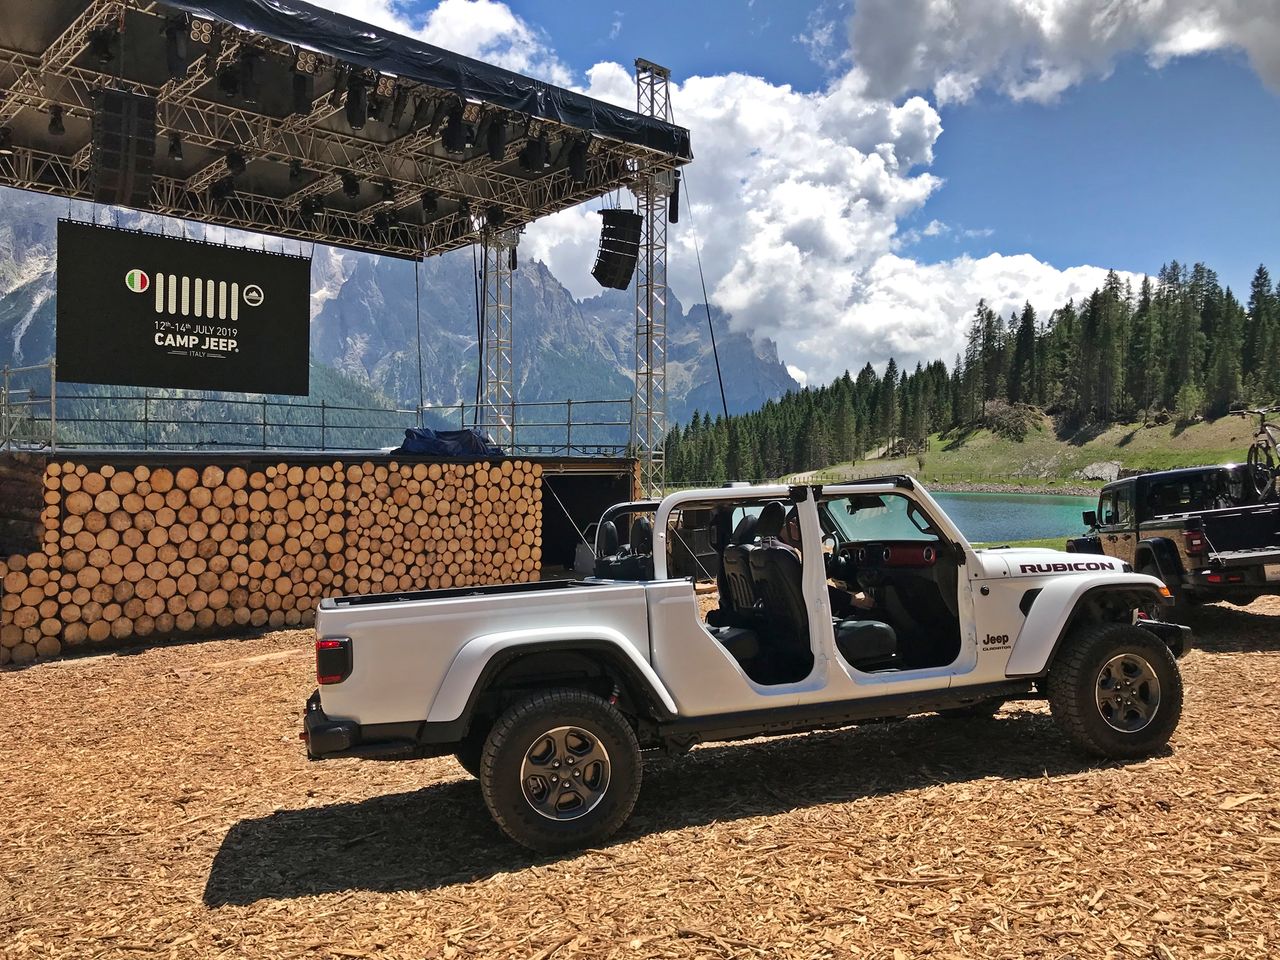 Jeep Gladiator zadebiutował w Europie tuż przed imprezą Camp Jeep. Jej uczestnicy zobaczą go jako pierwsi.